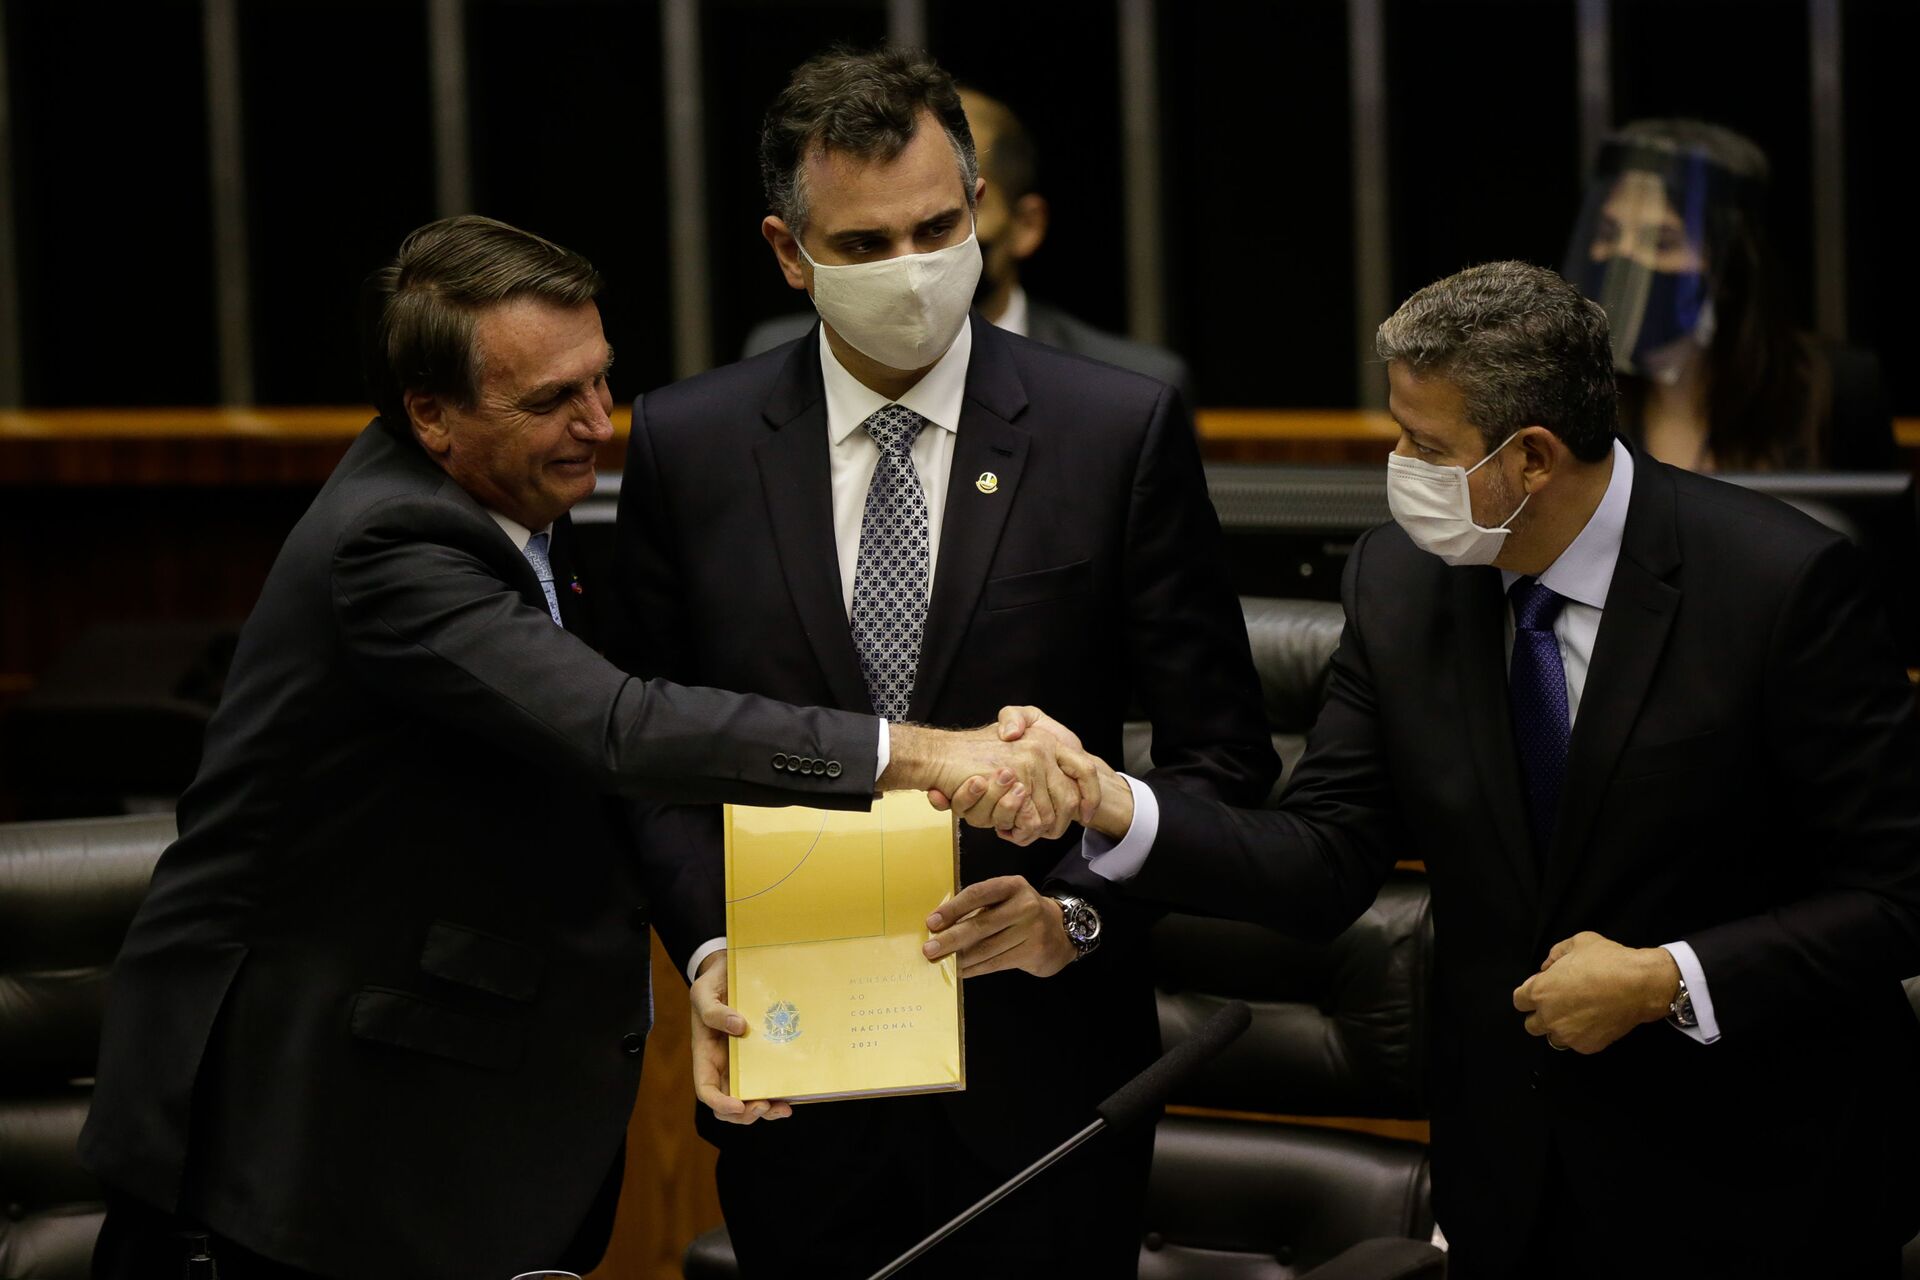 Impeachment de Bolsonaro 'seria desastroso', afirma presidente do STF - Sputnik Brasil, 1920, 07.02.2021